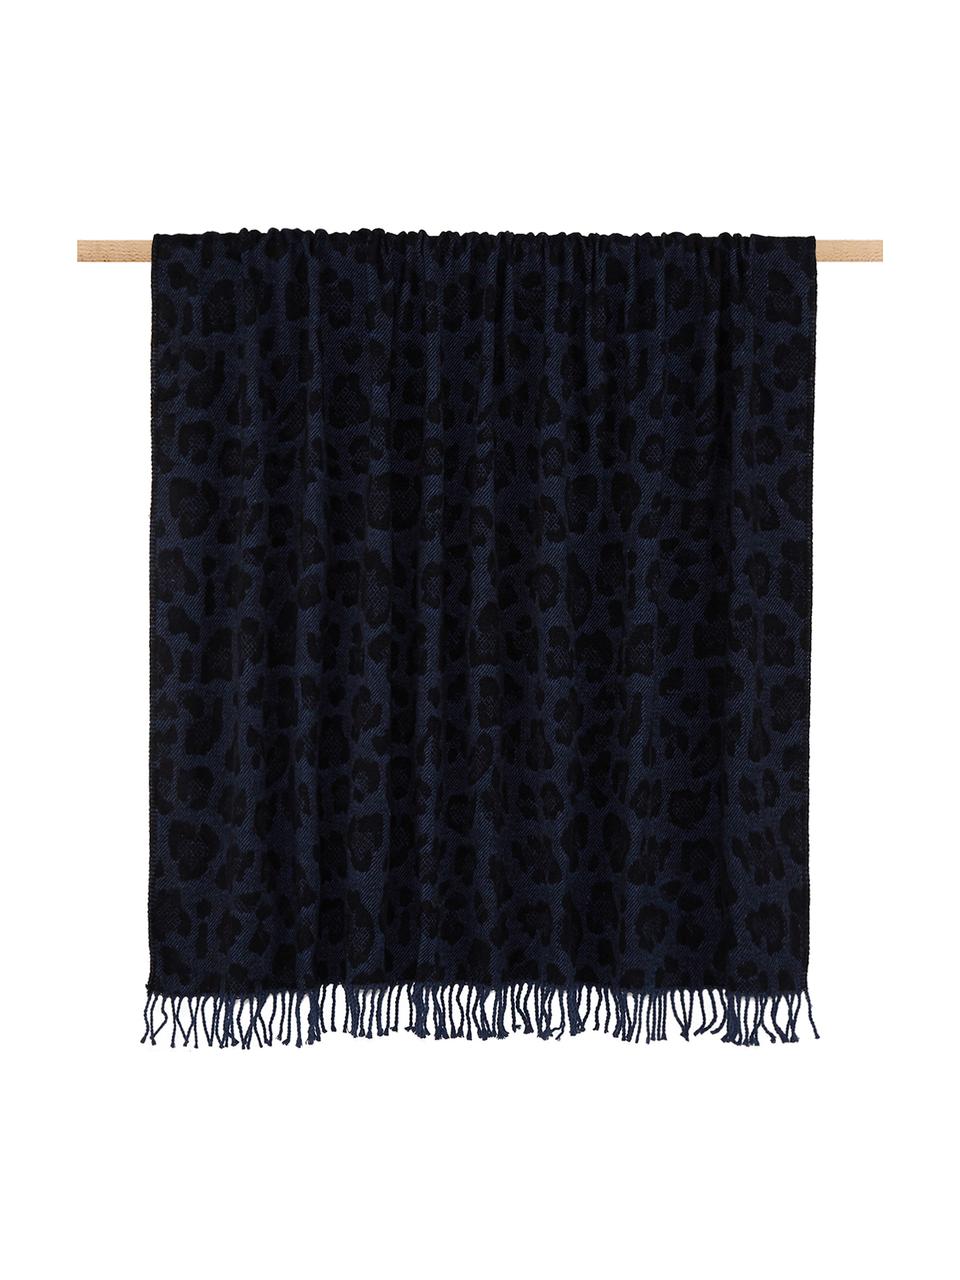 Plaid Bory mit Leoparden Print, 60% Baumwolle, 40% Acryl, Blau, B 150 x L 200